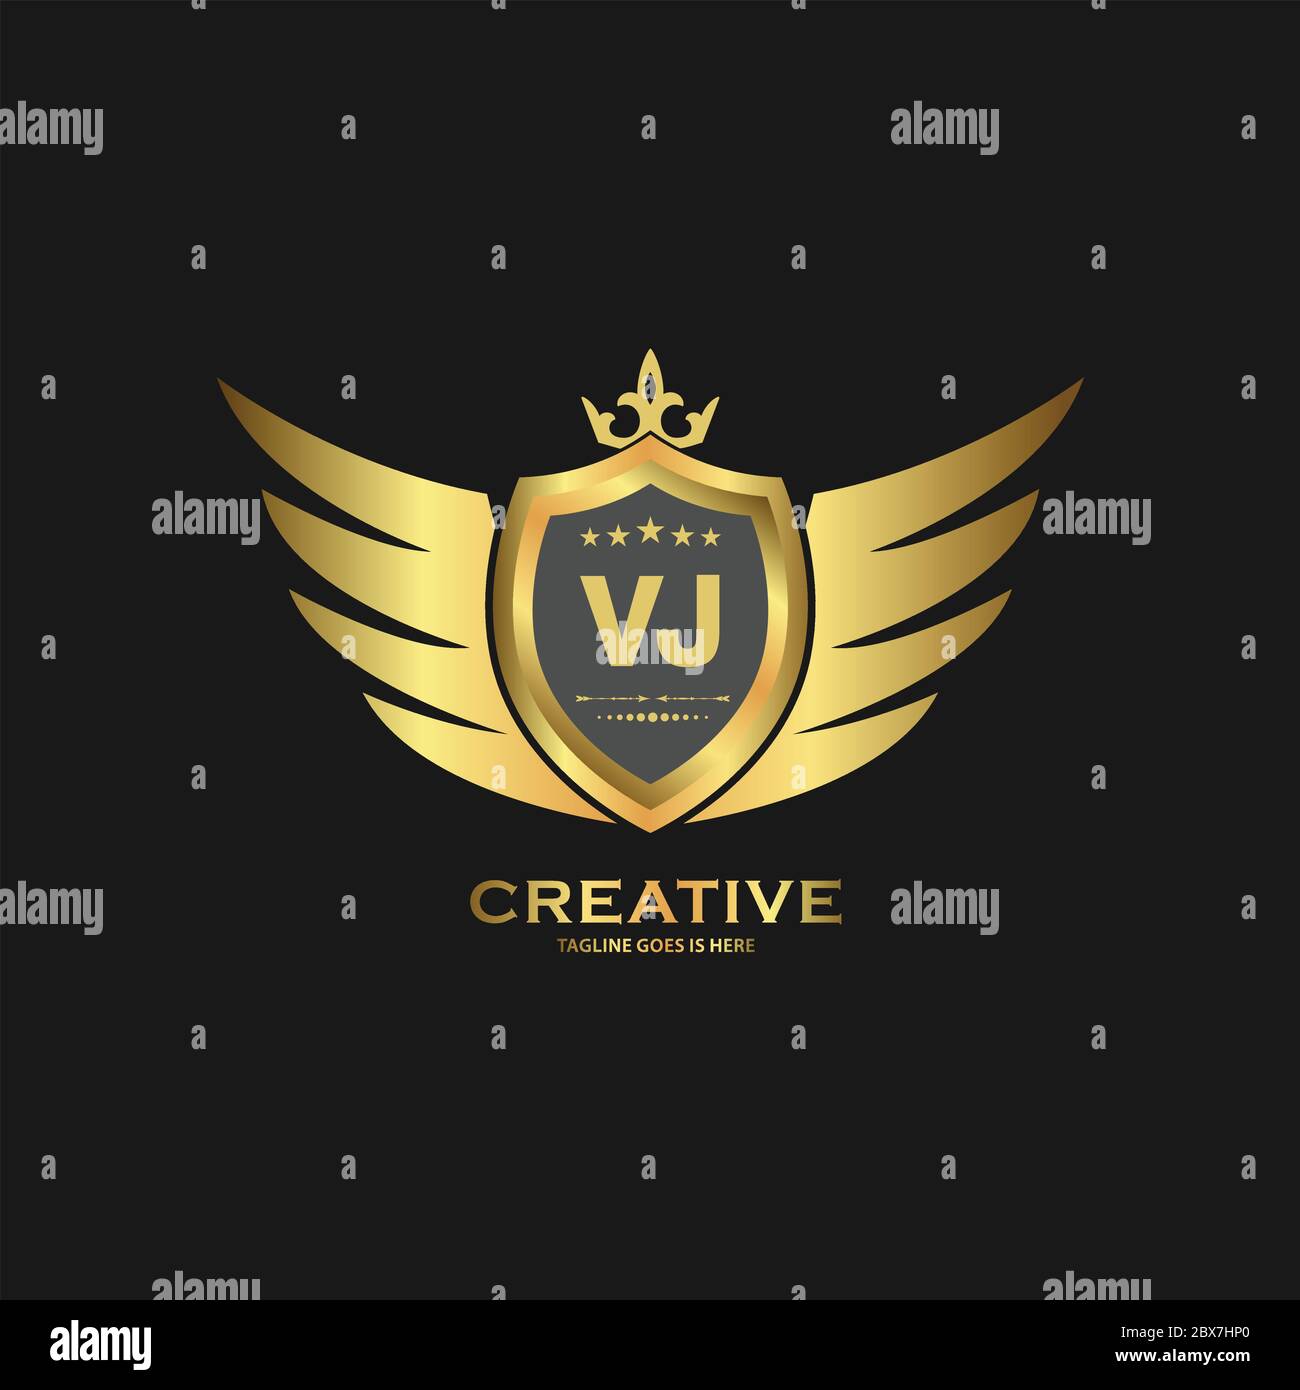 Premium Vector  Monogram vl logo design template free